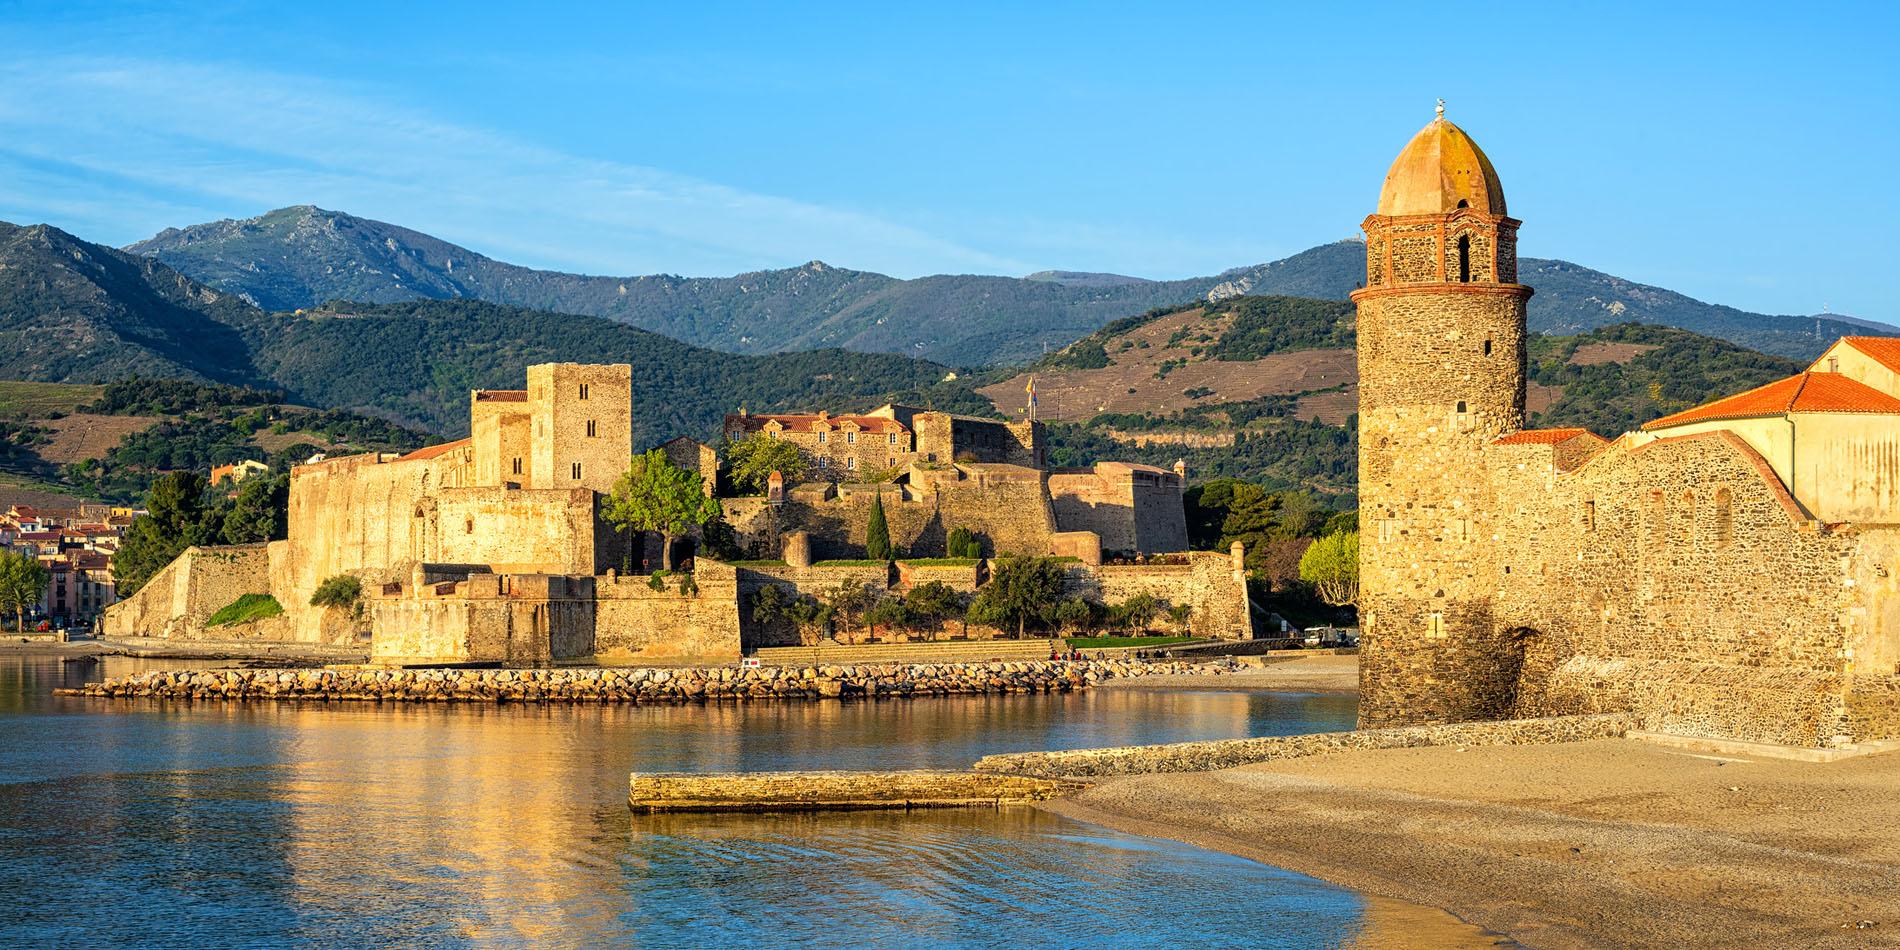 Clocher et château royal de Collioure